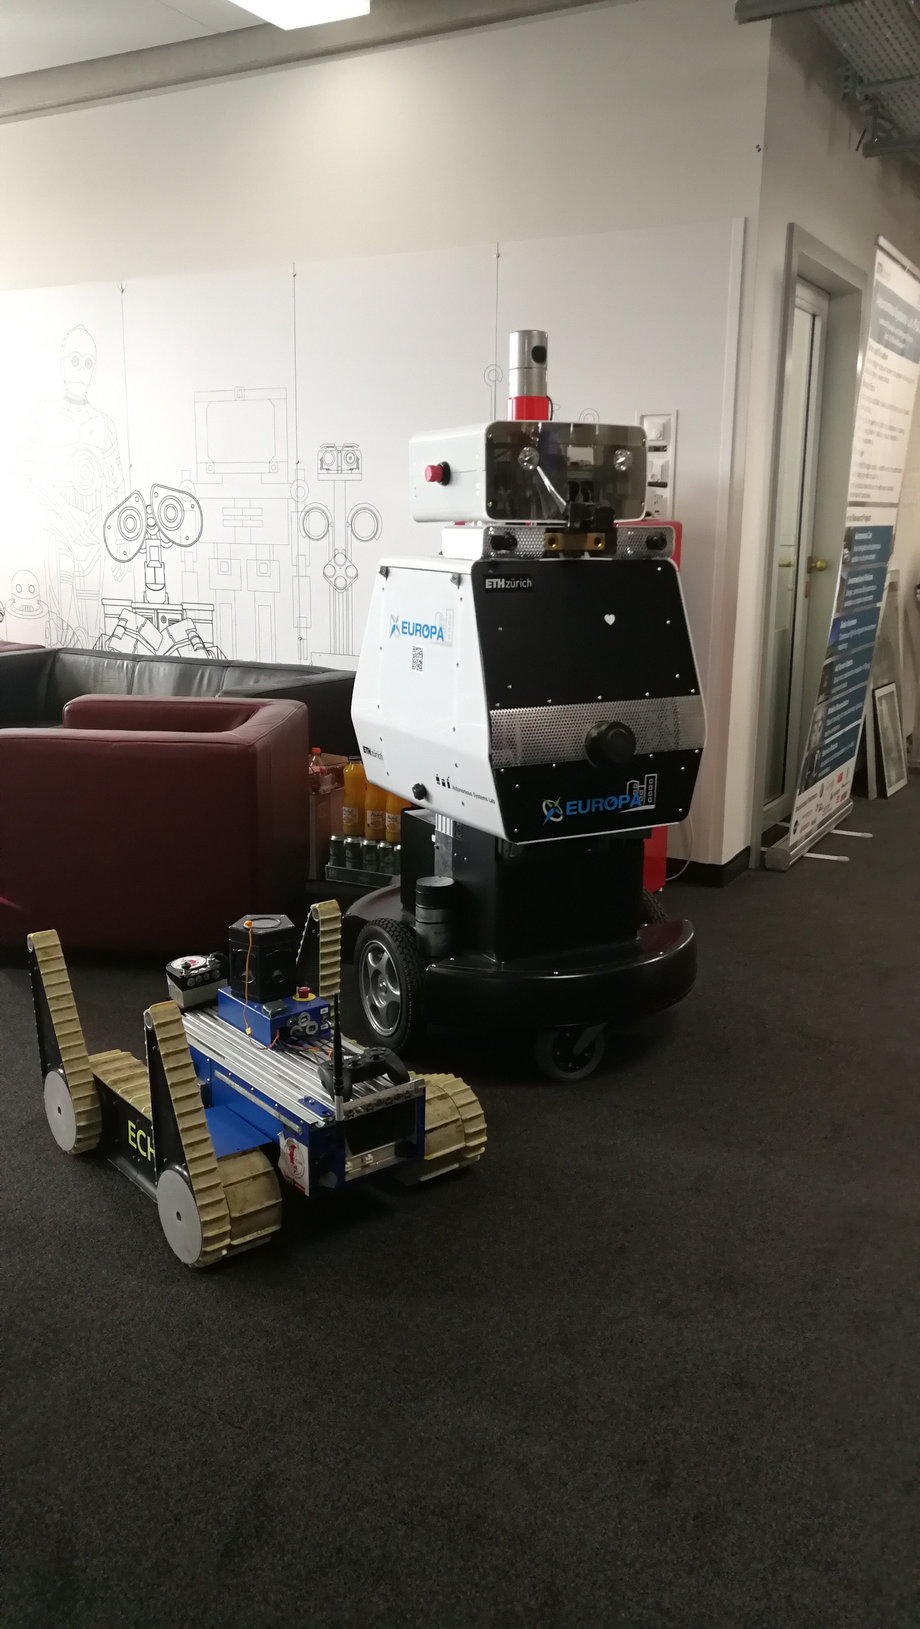 Roboty stworzone przez naukowców z Politechniki Federalnej w Zurychu (ETH) 